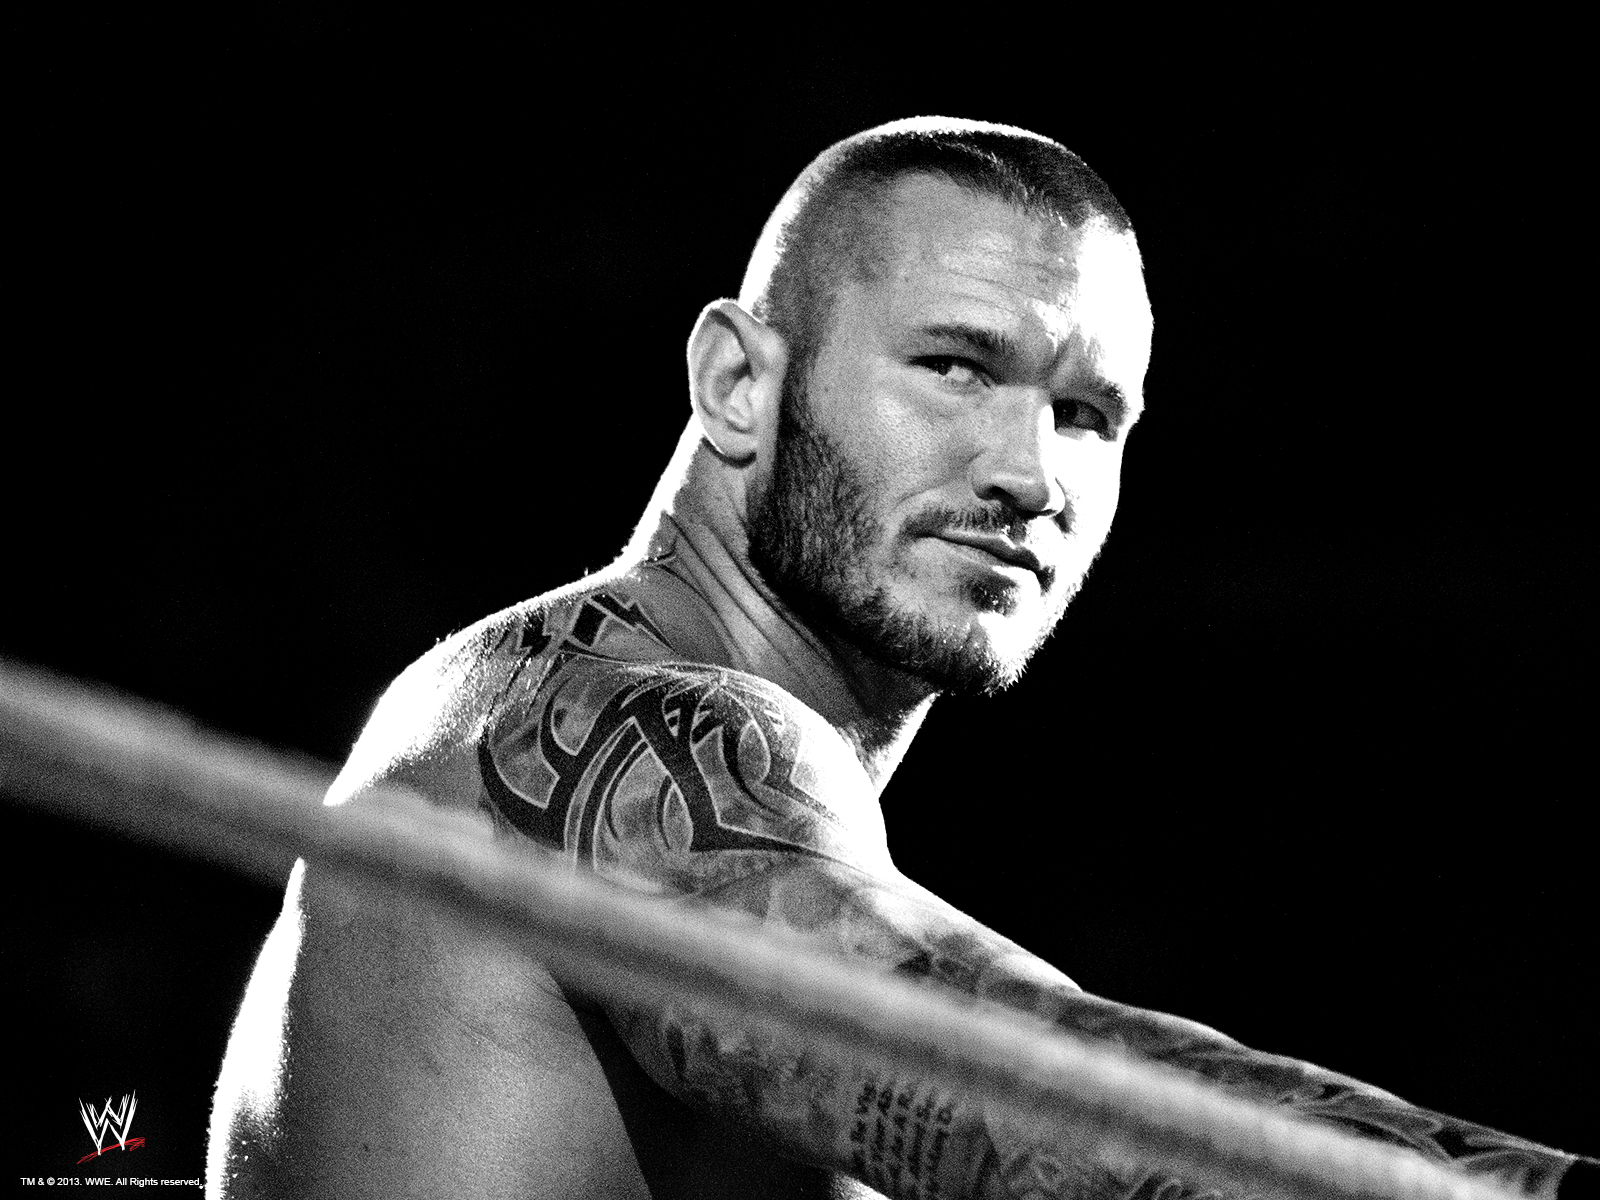 Randy Orton - WWE Wallpaper 36843527 - Fanpop